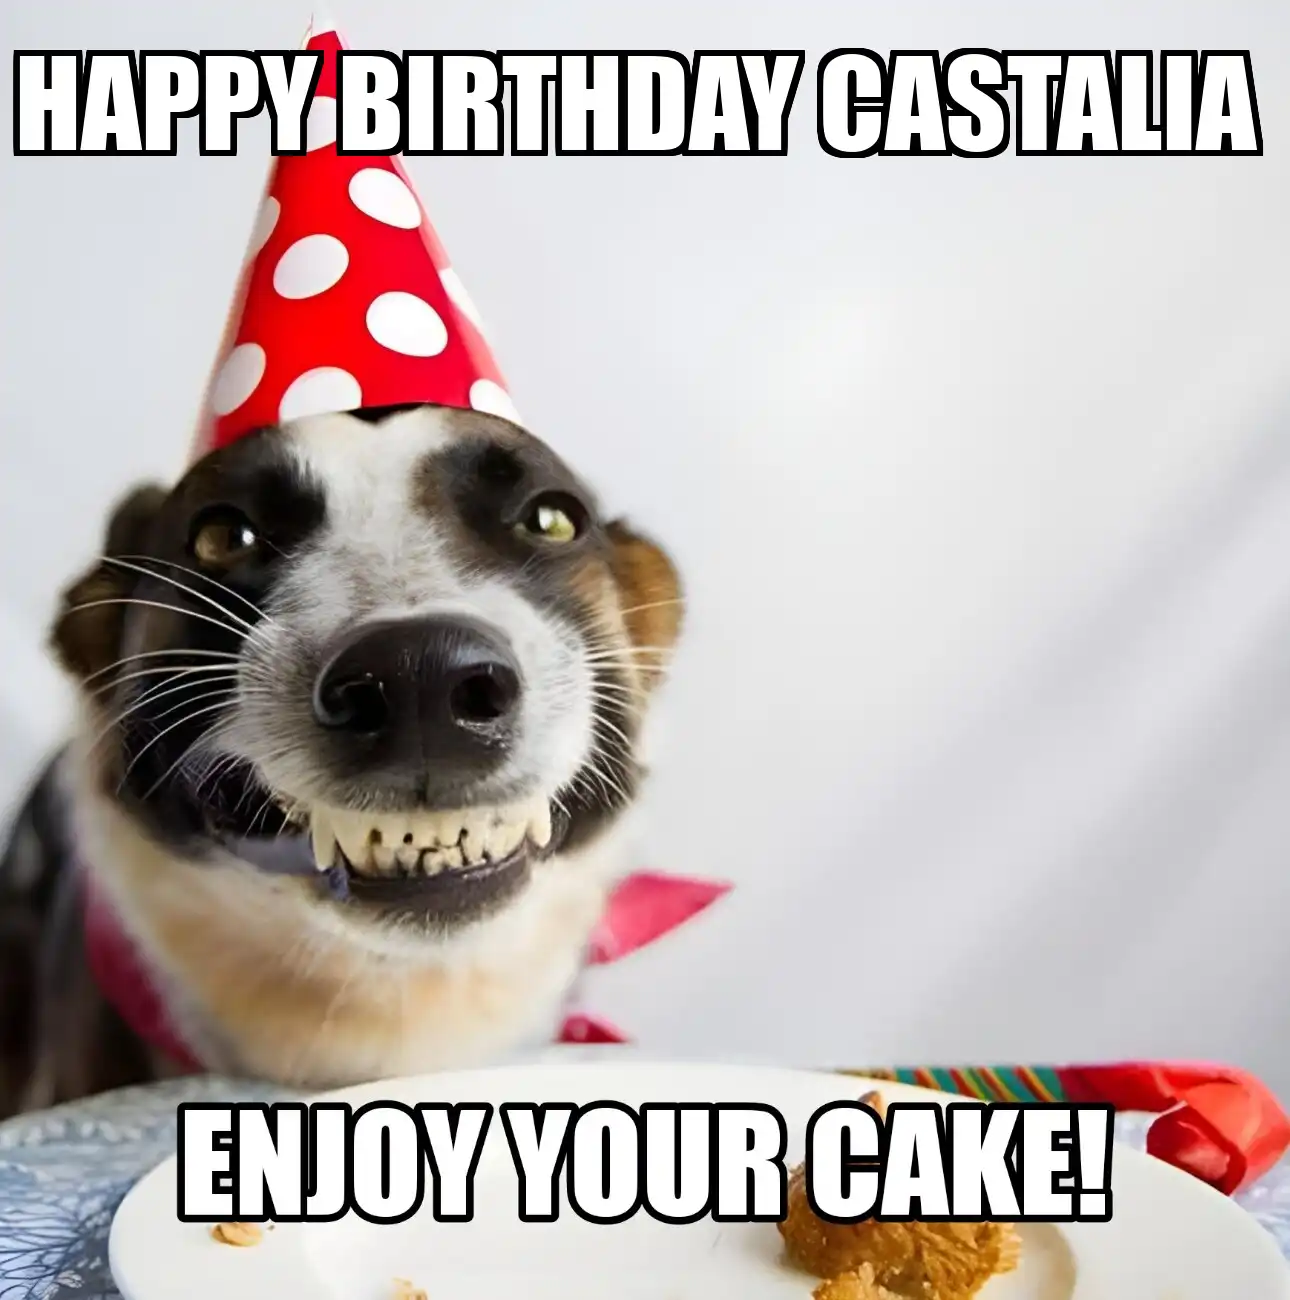 Happy Birthday Castalia Enjoy Your Cake Dog Meme